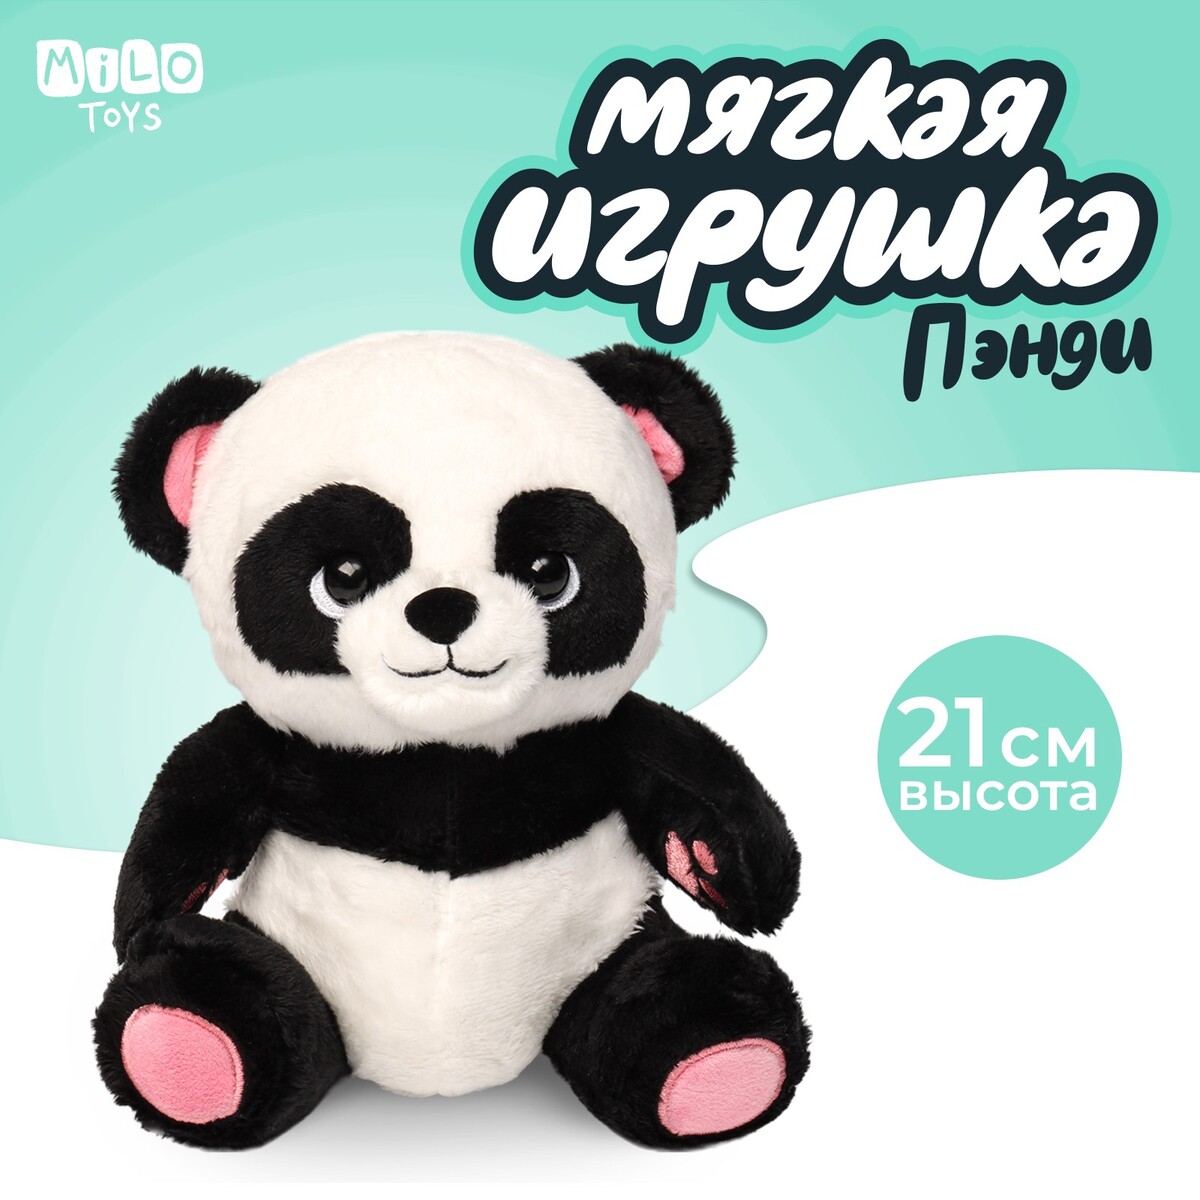 Мягкая игрушка панда мягкая игрушка fluffy heart панда 25 см mt mrt081910 25